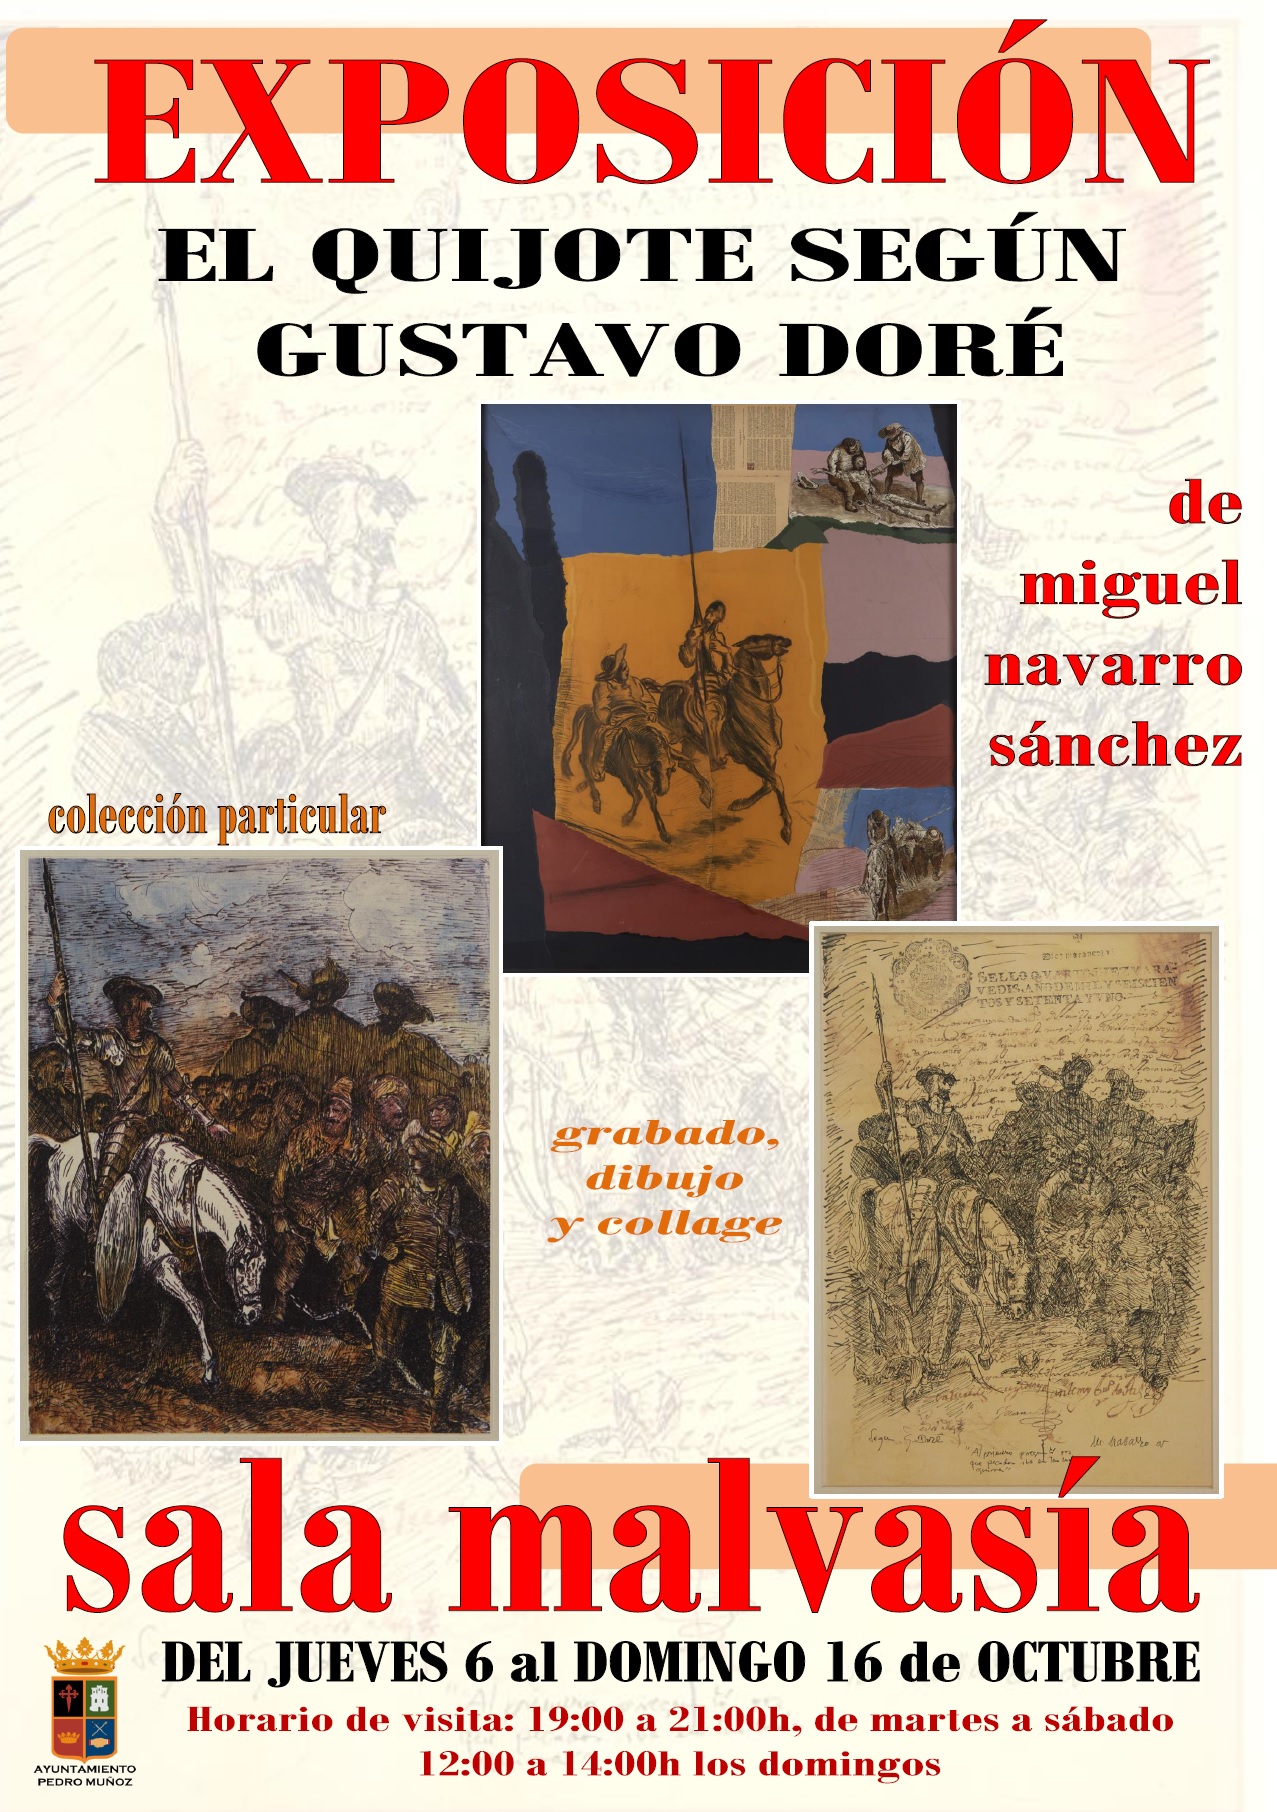 Una exposición de grabados, dibujos y collage, basados en la obra de gustavo doré, del manchego Miguel Navarro, llenará de "El Quijote" la sala Malvasía de Pedro Muñoz